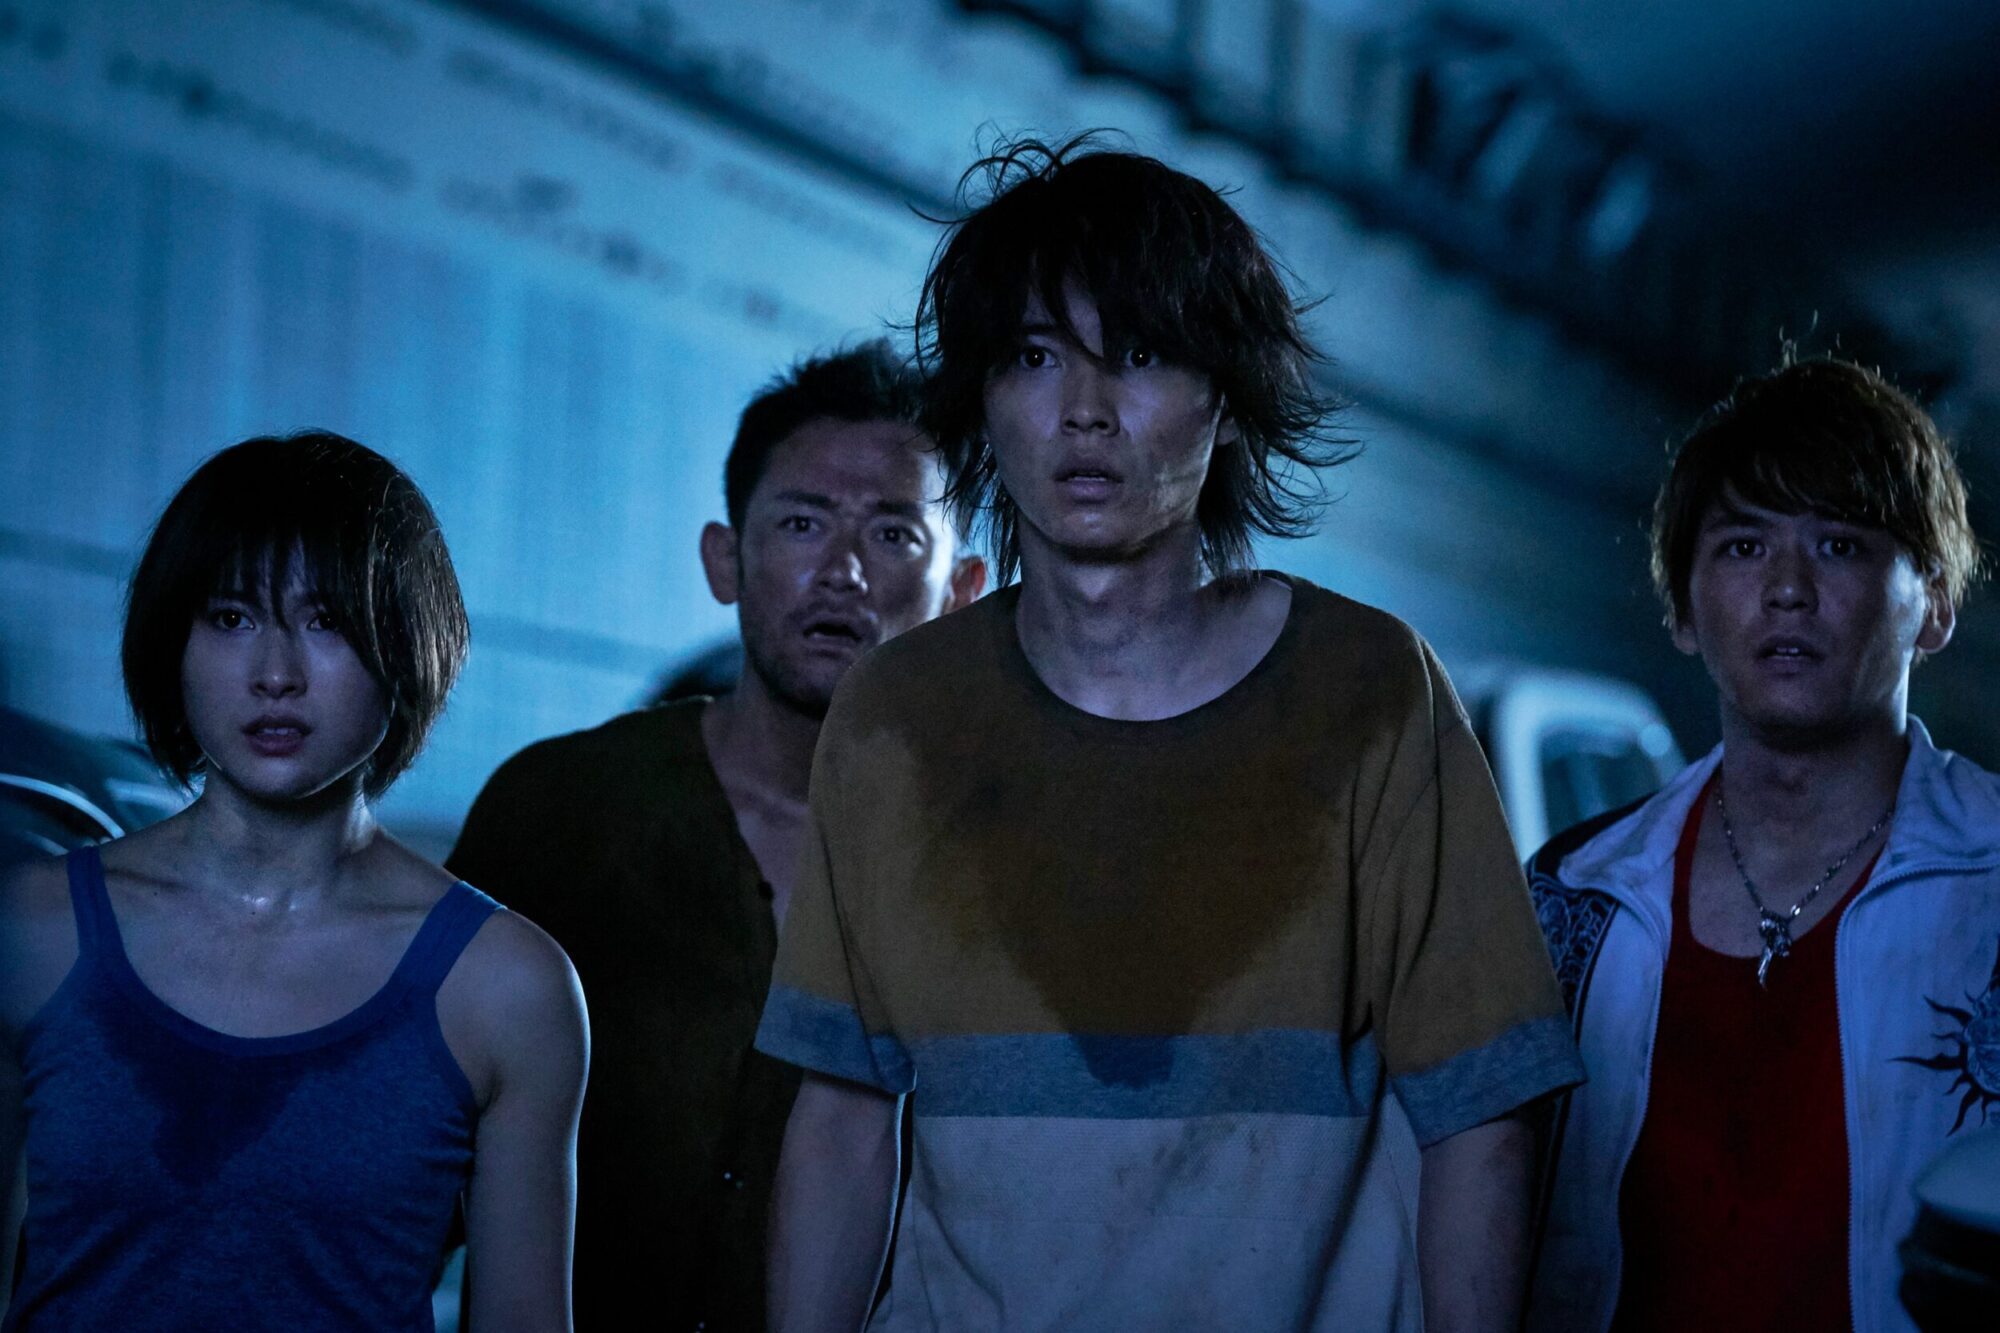 Serie japonesa Alice in Bordeland retorna para sua 2ª temporada na Netflix. Será que terá uma 3ª temproada?